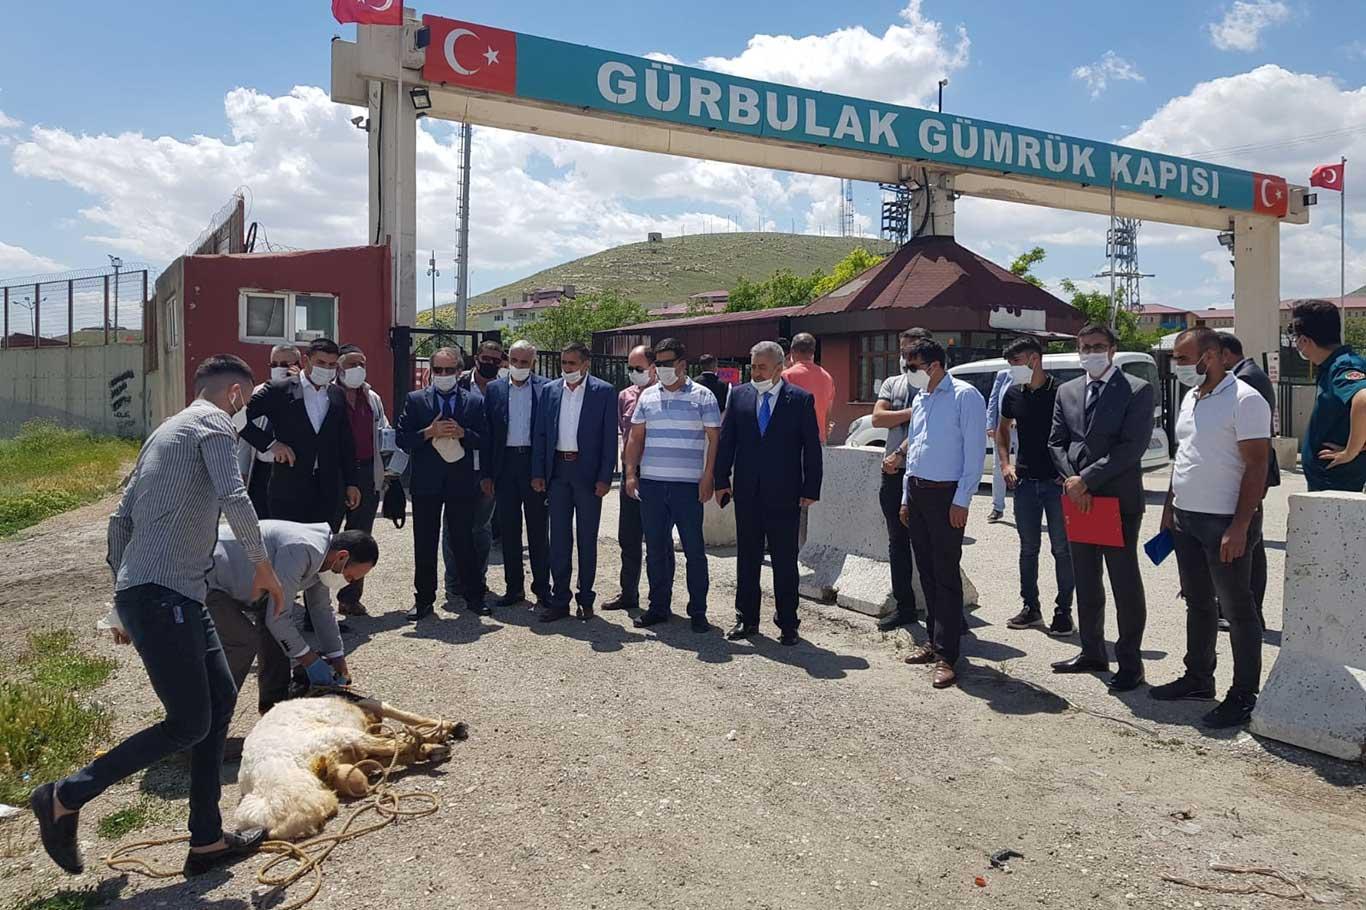 Gürbulak Sınır Kapısı'nın açılışına sevinen ihracatçılar kurban kesti